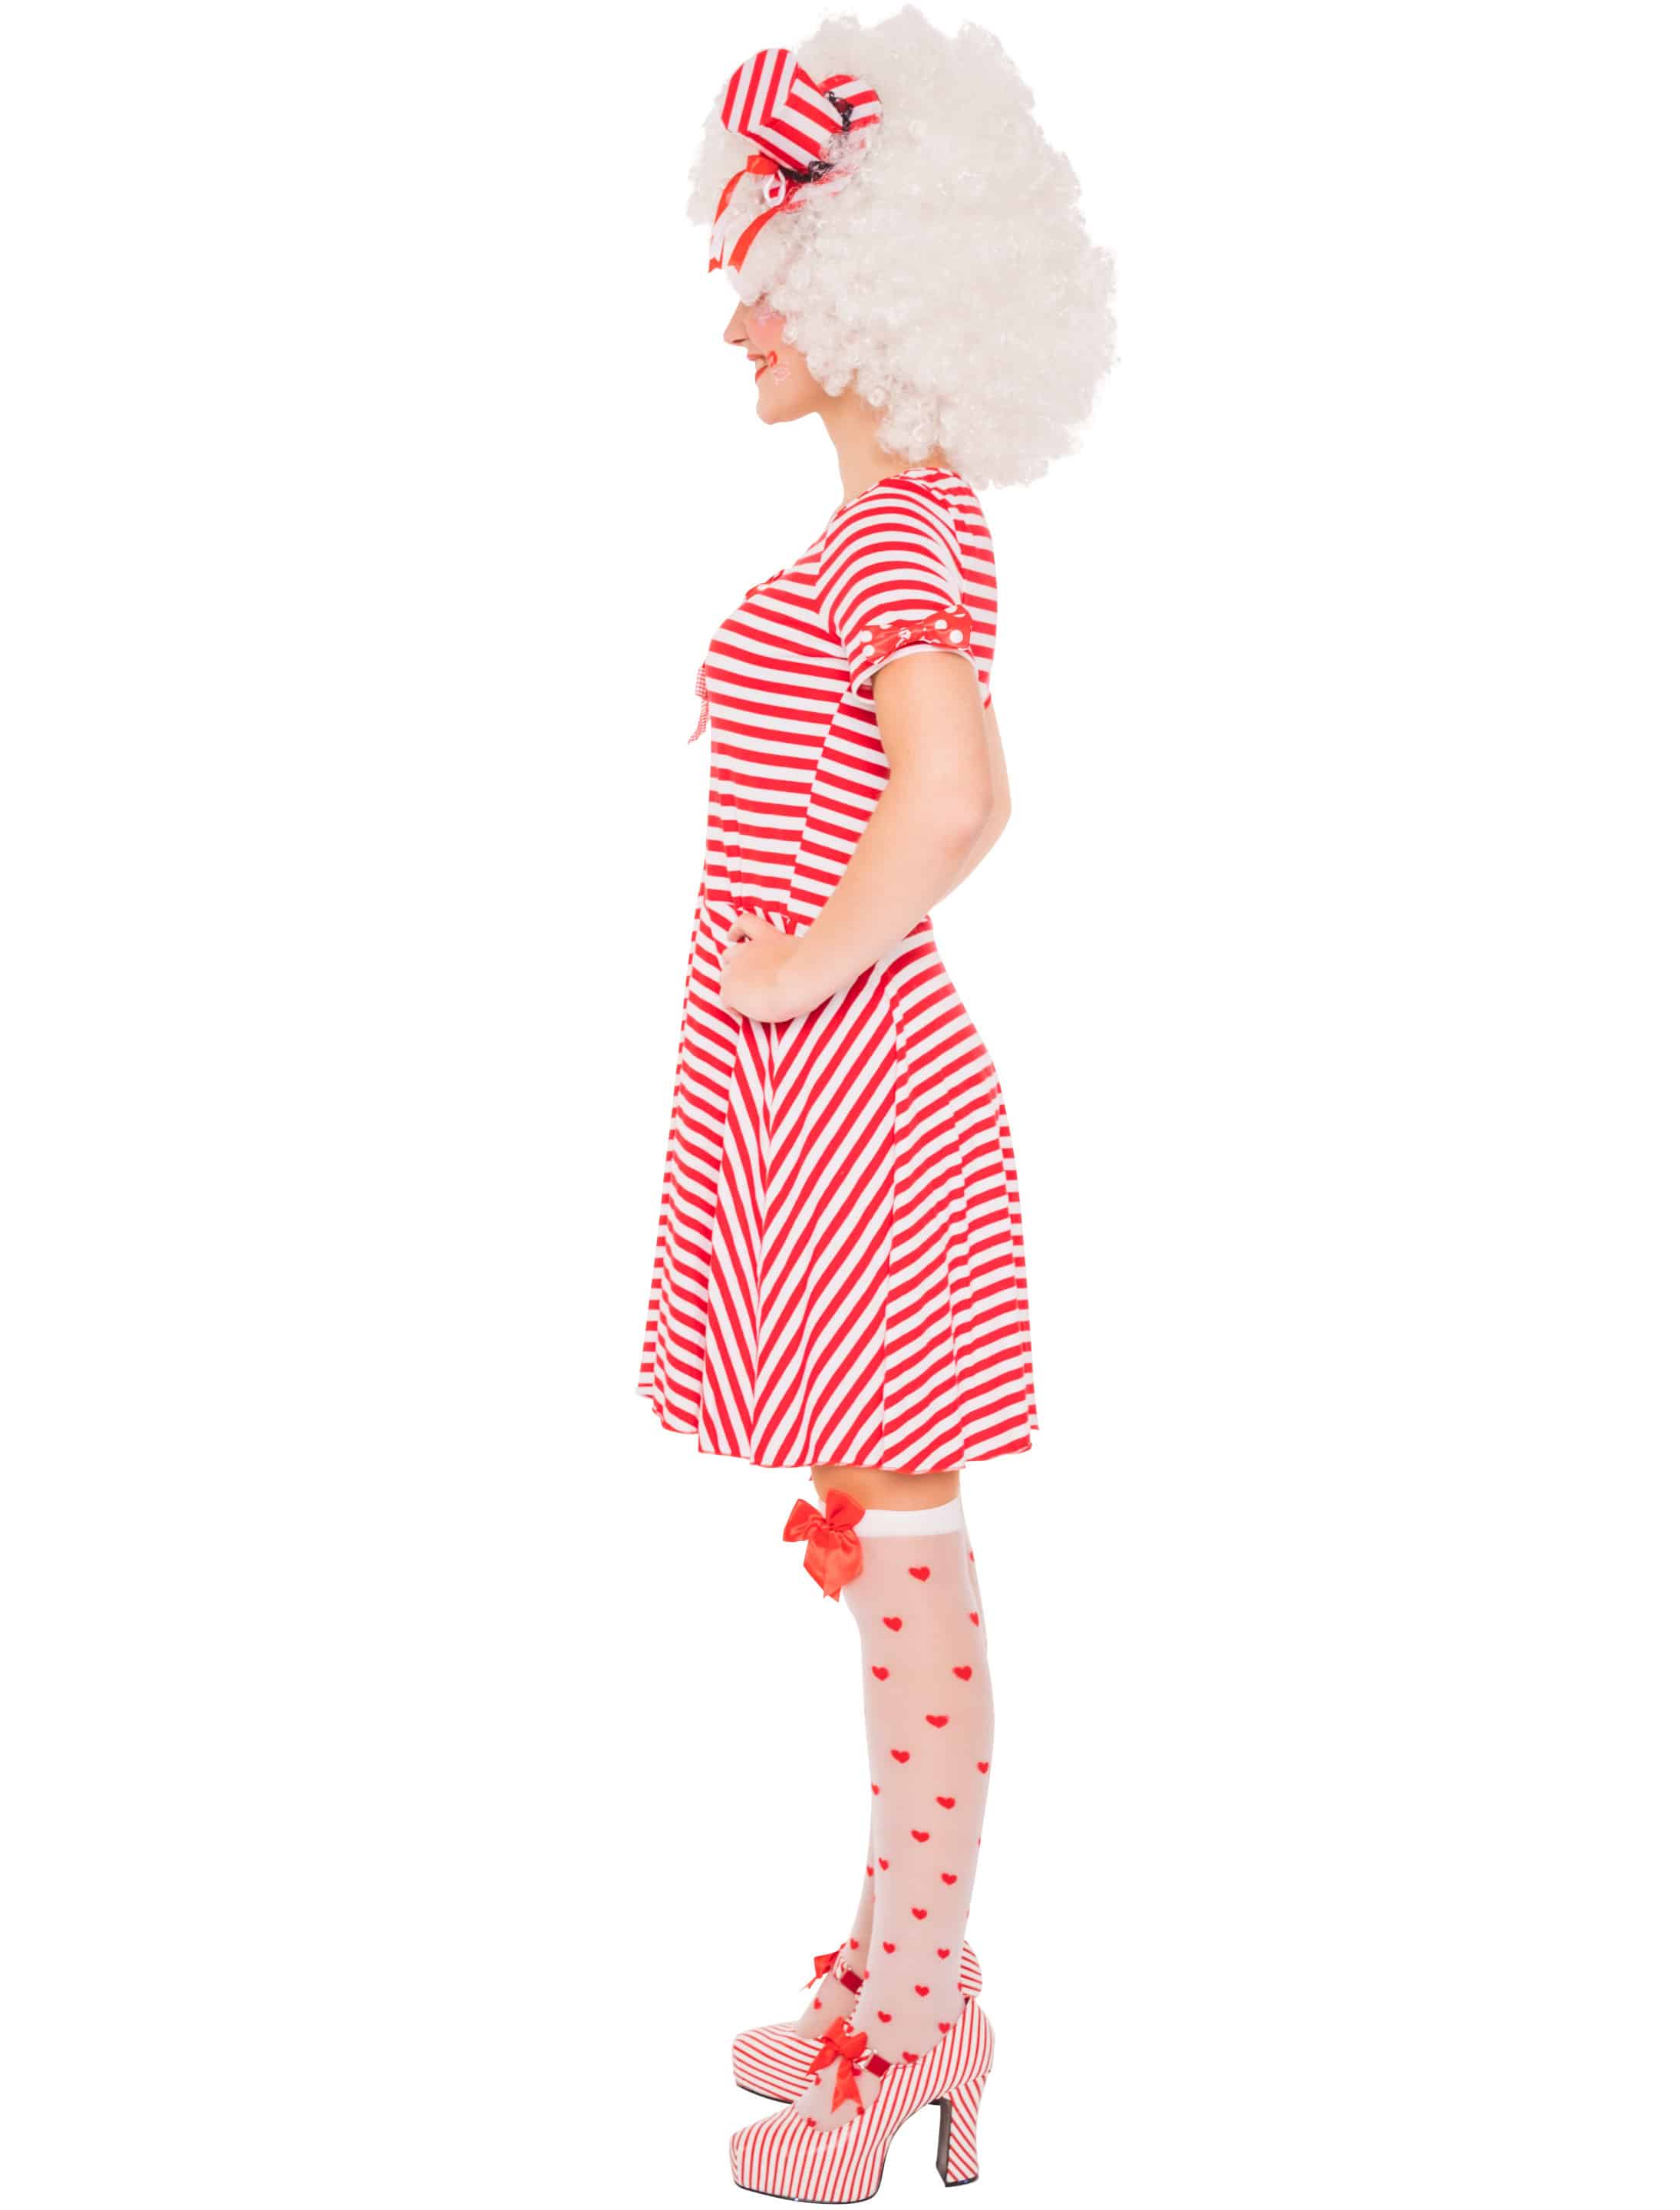 Kleid gestreift mit Schleifen Damen rot/weiß S/M